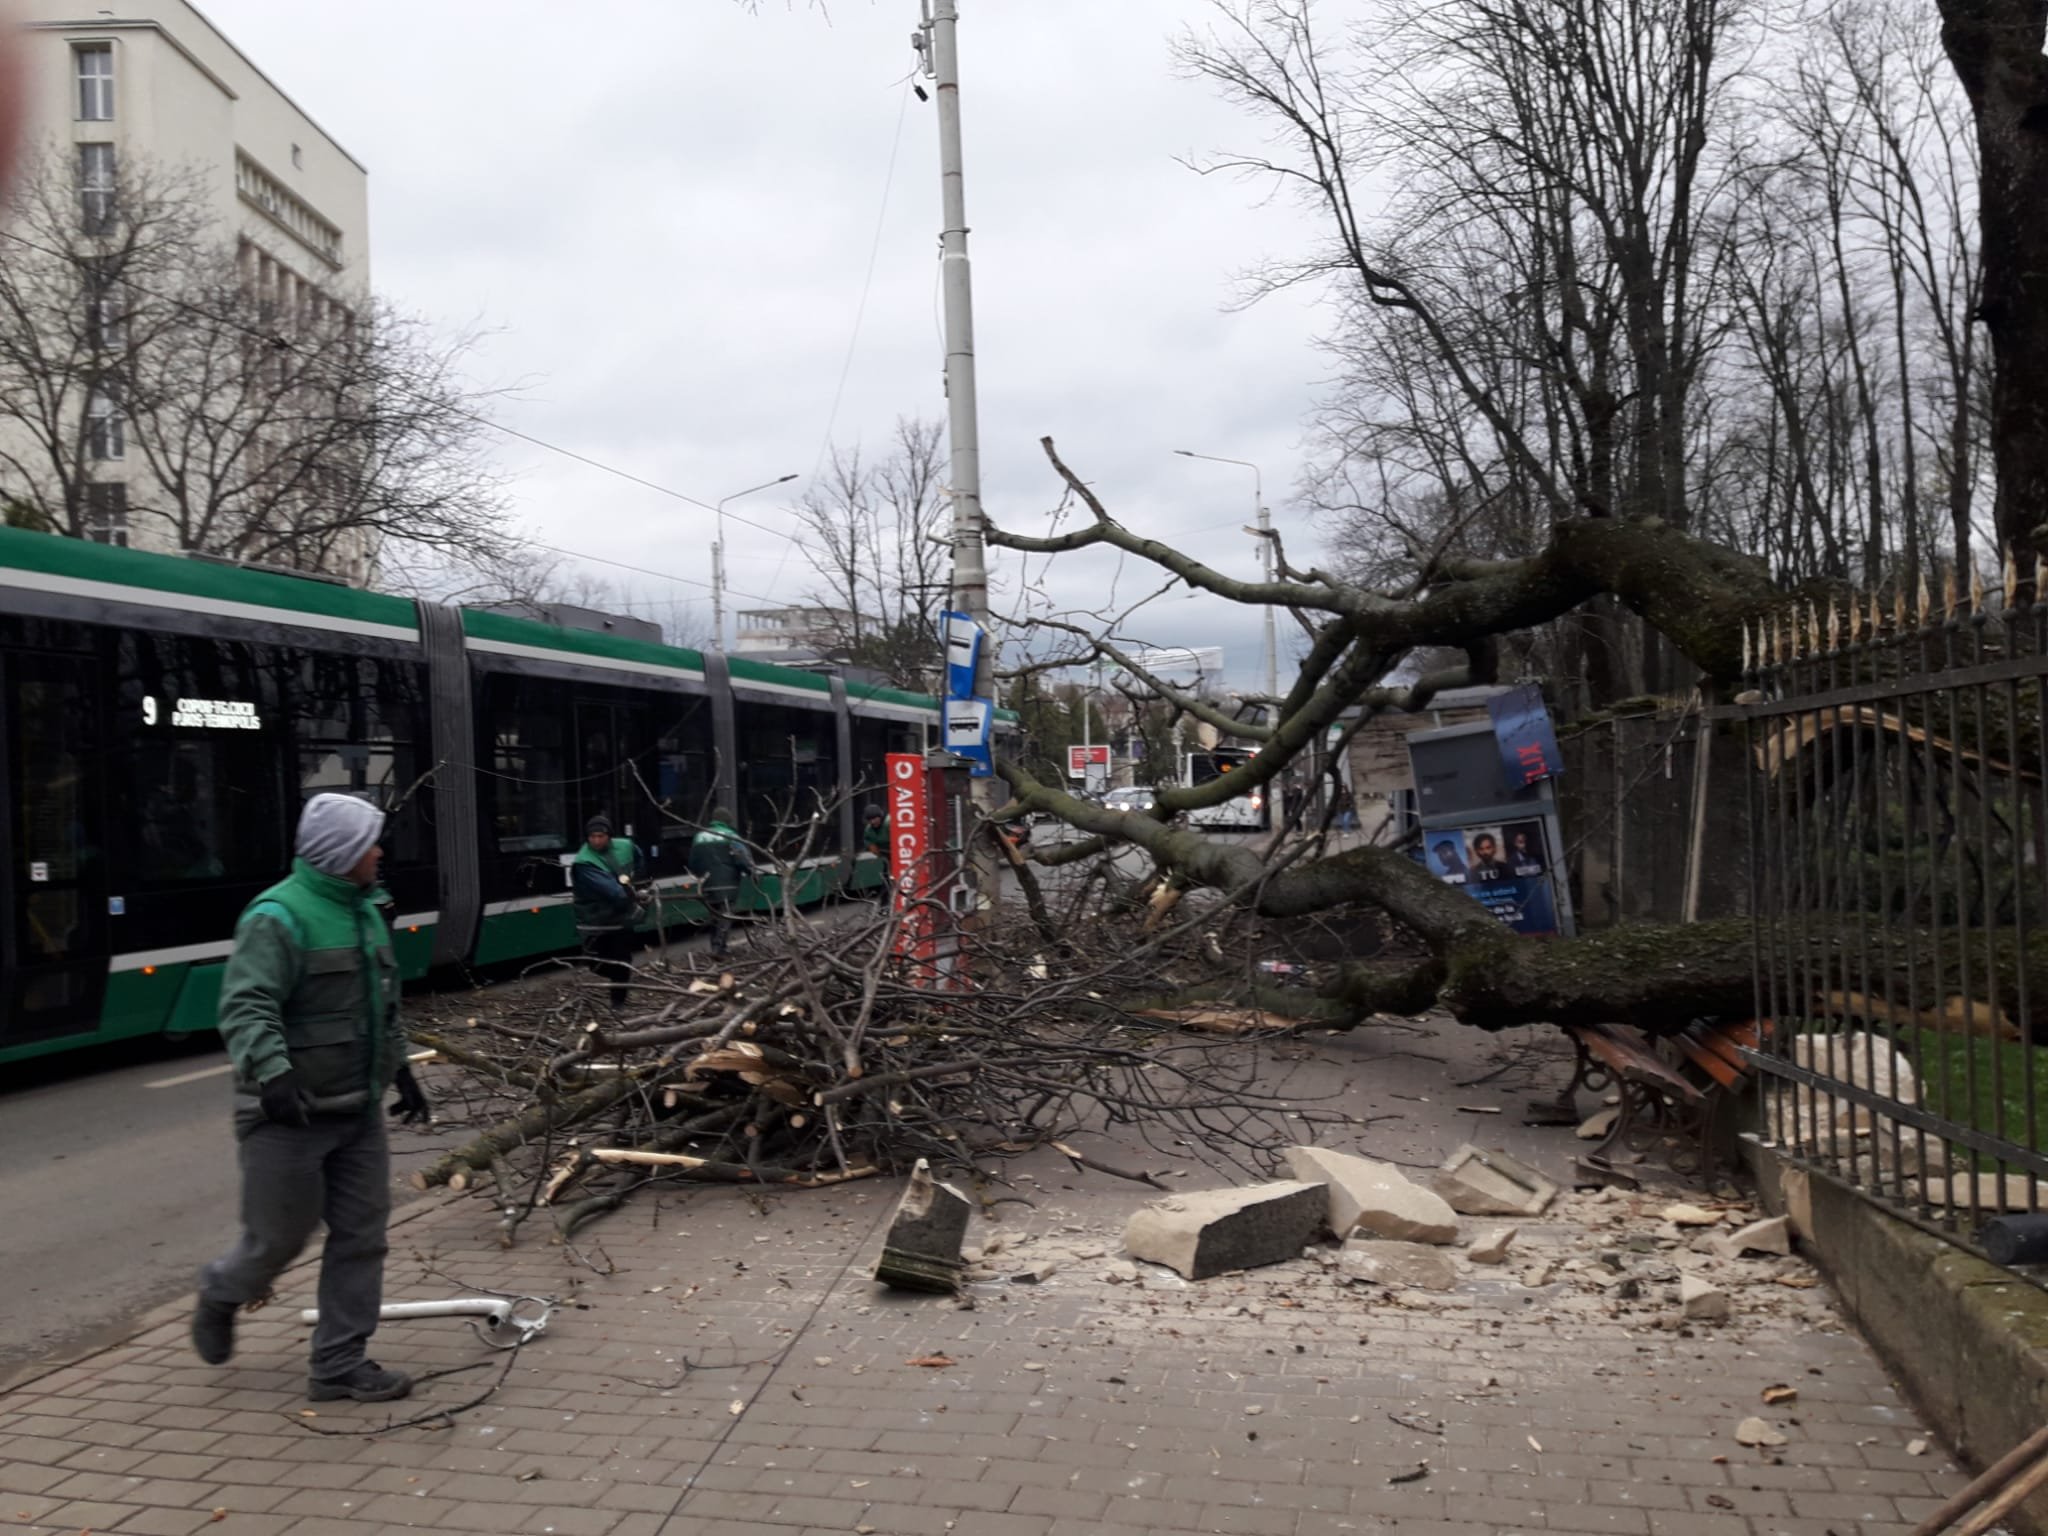  VIDEO Momentul în care un copac din Copou cade peste stația de autobuz generând flame electrice